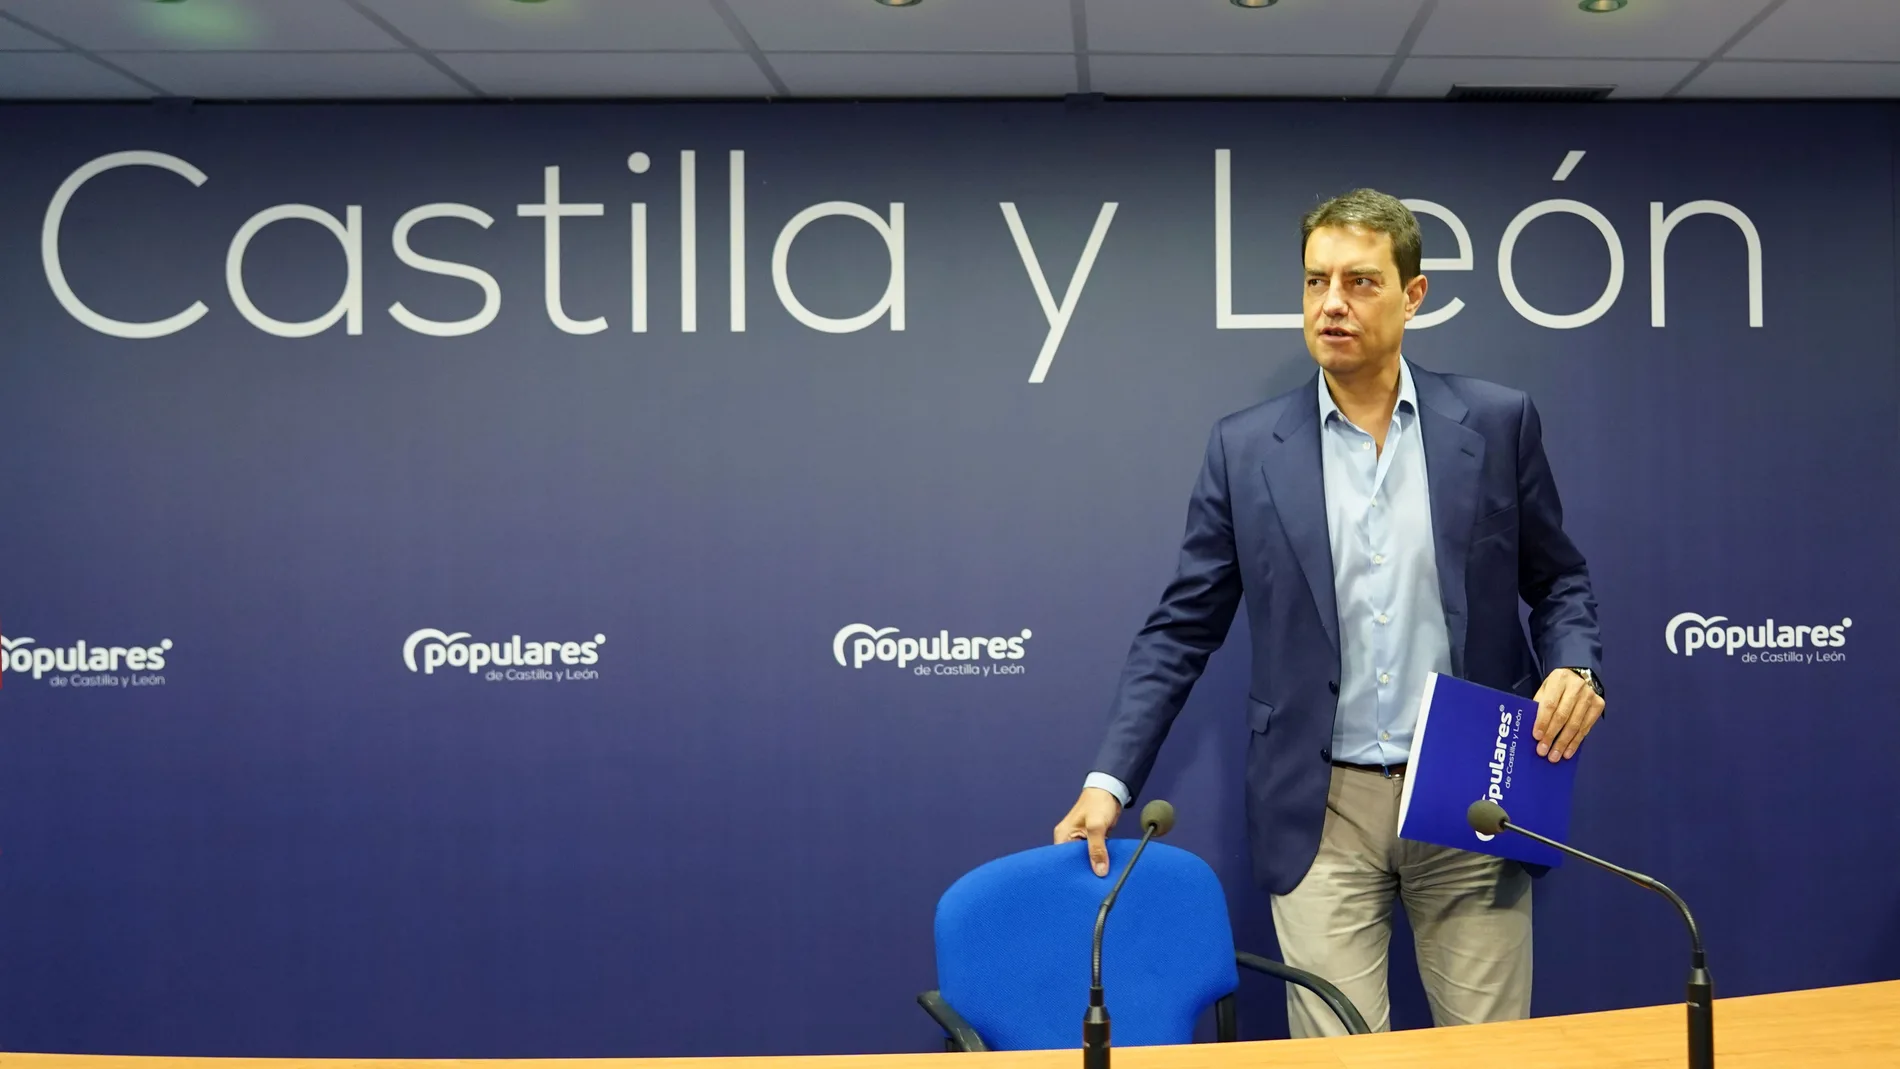  El coordinador y responsable de la campaña electoral del Partido Popular de Castilla y León, Ángel Ibáñez, presenta la campaña de las elecciones municipales del 28 de mayo